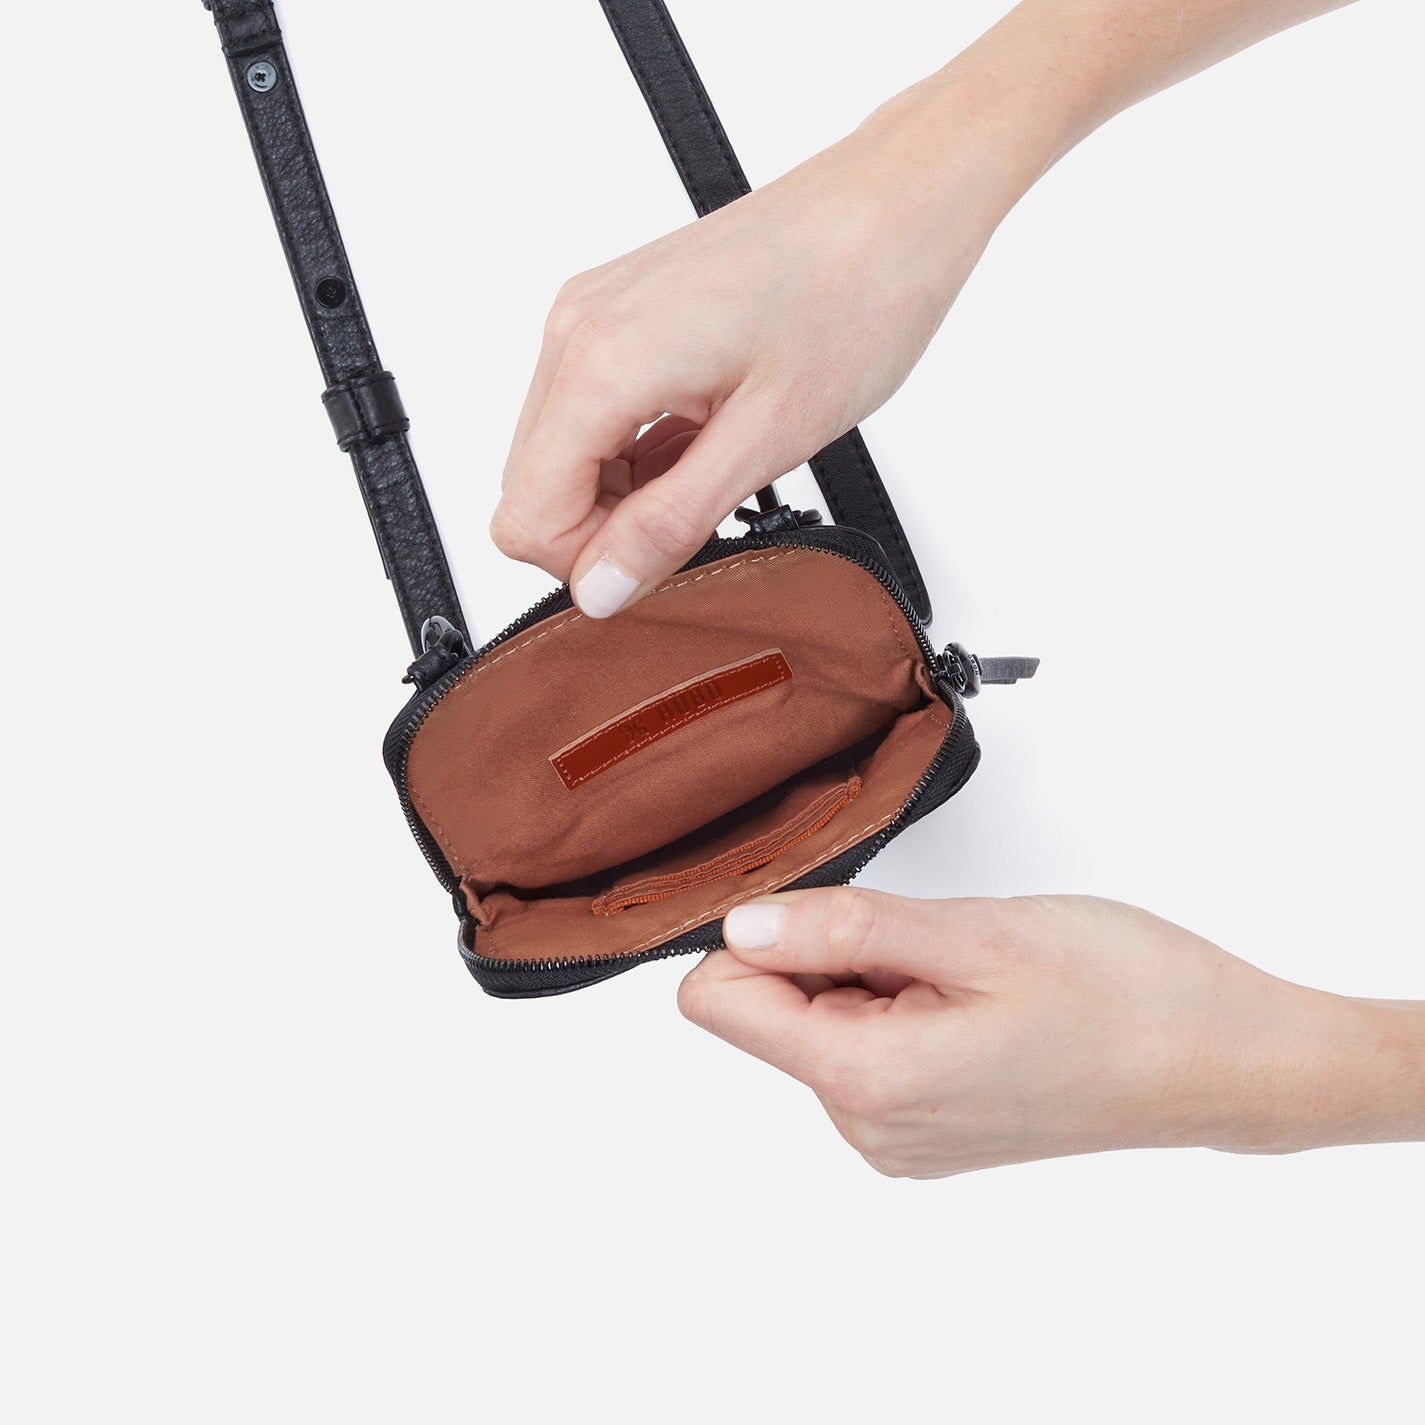 HOBO, Bags, Hobo Agile Leather Smartphone Crossbody Bag Black